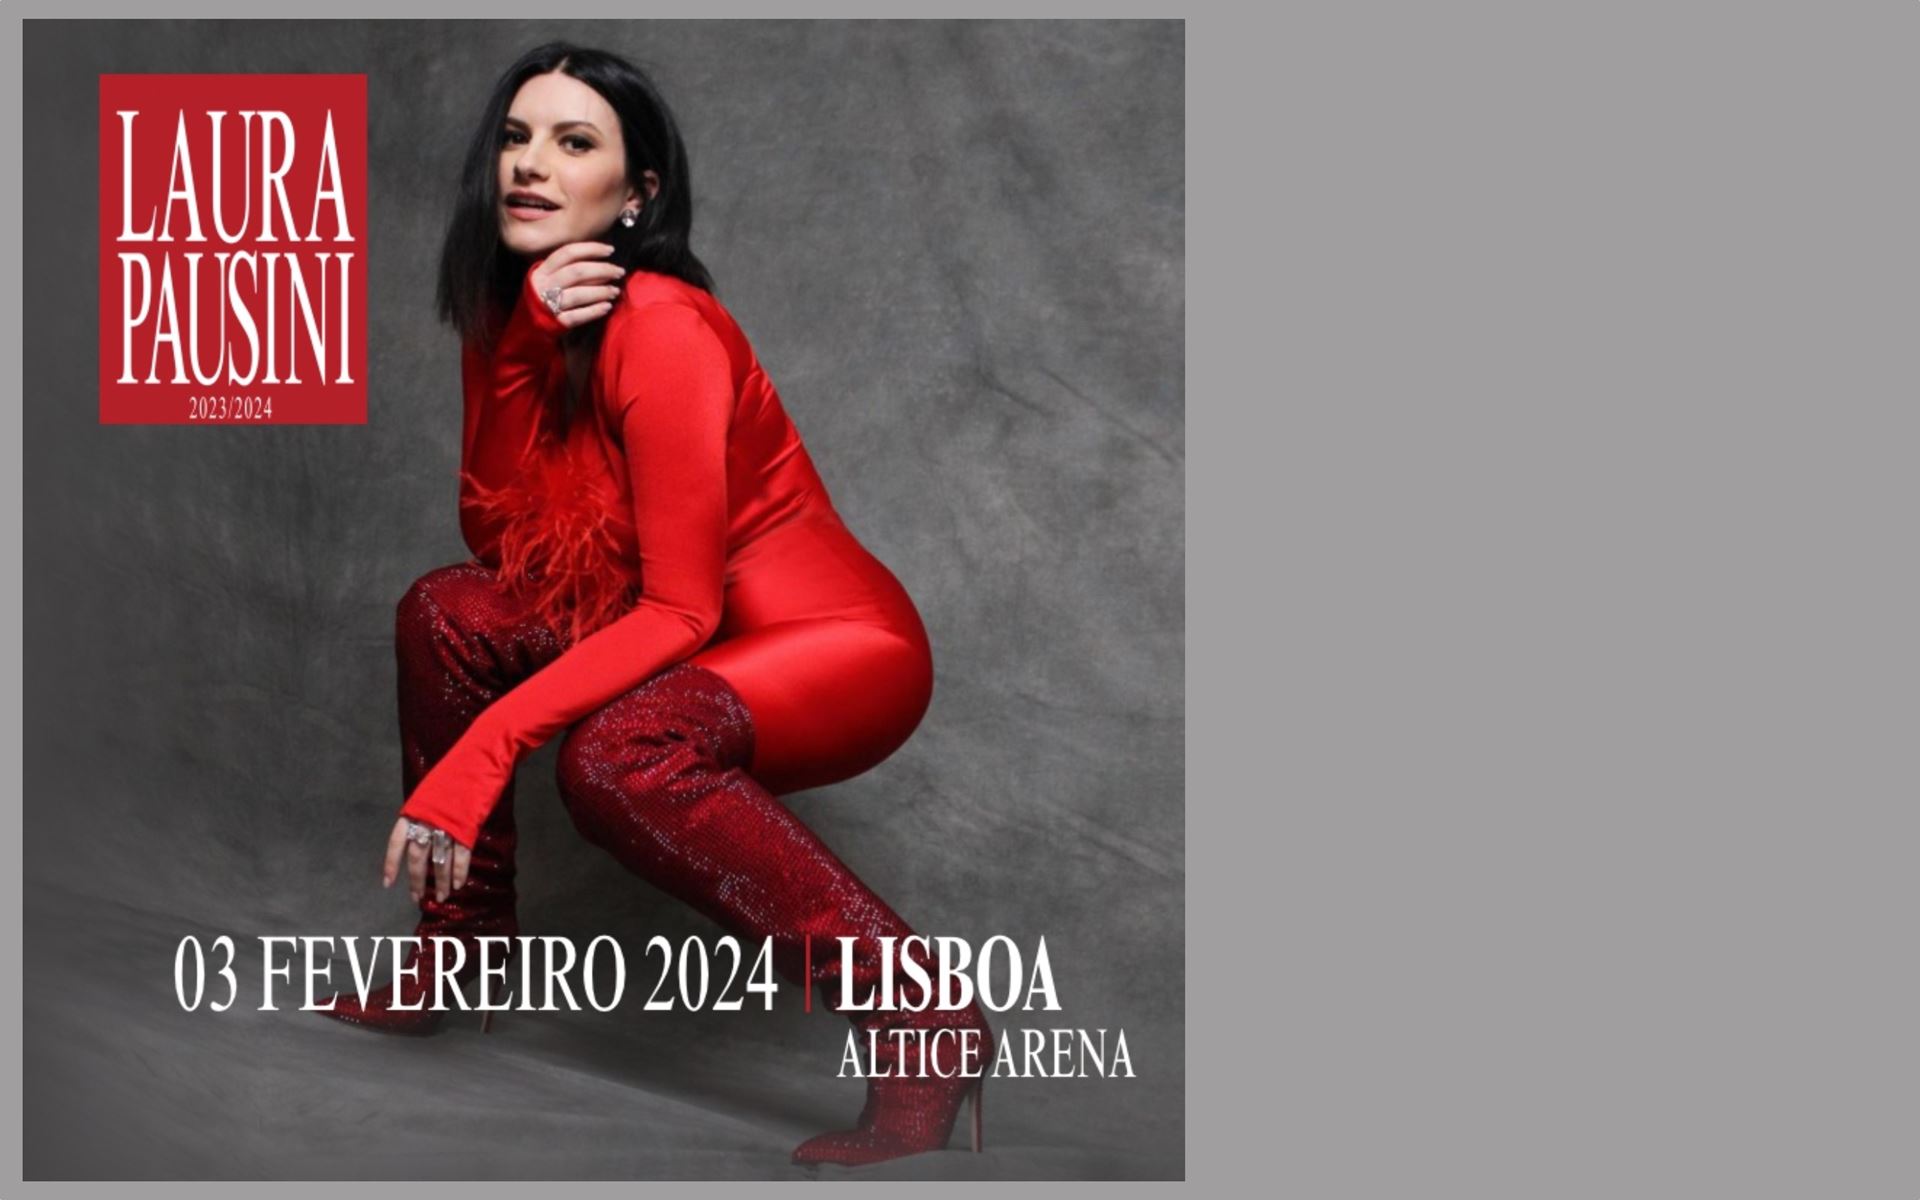 Laura Pausini World Tour 2024 também acontece em Lisboa A 3 de